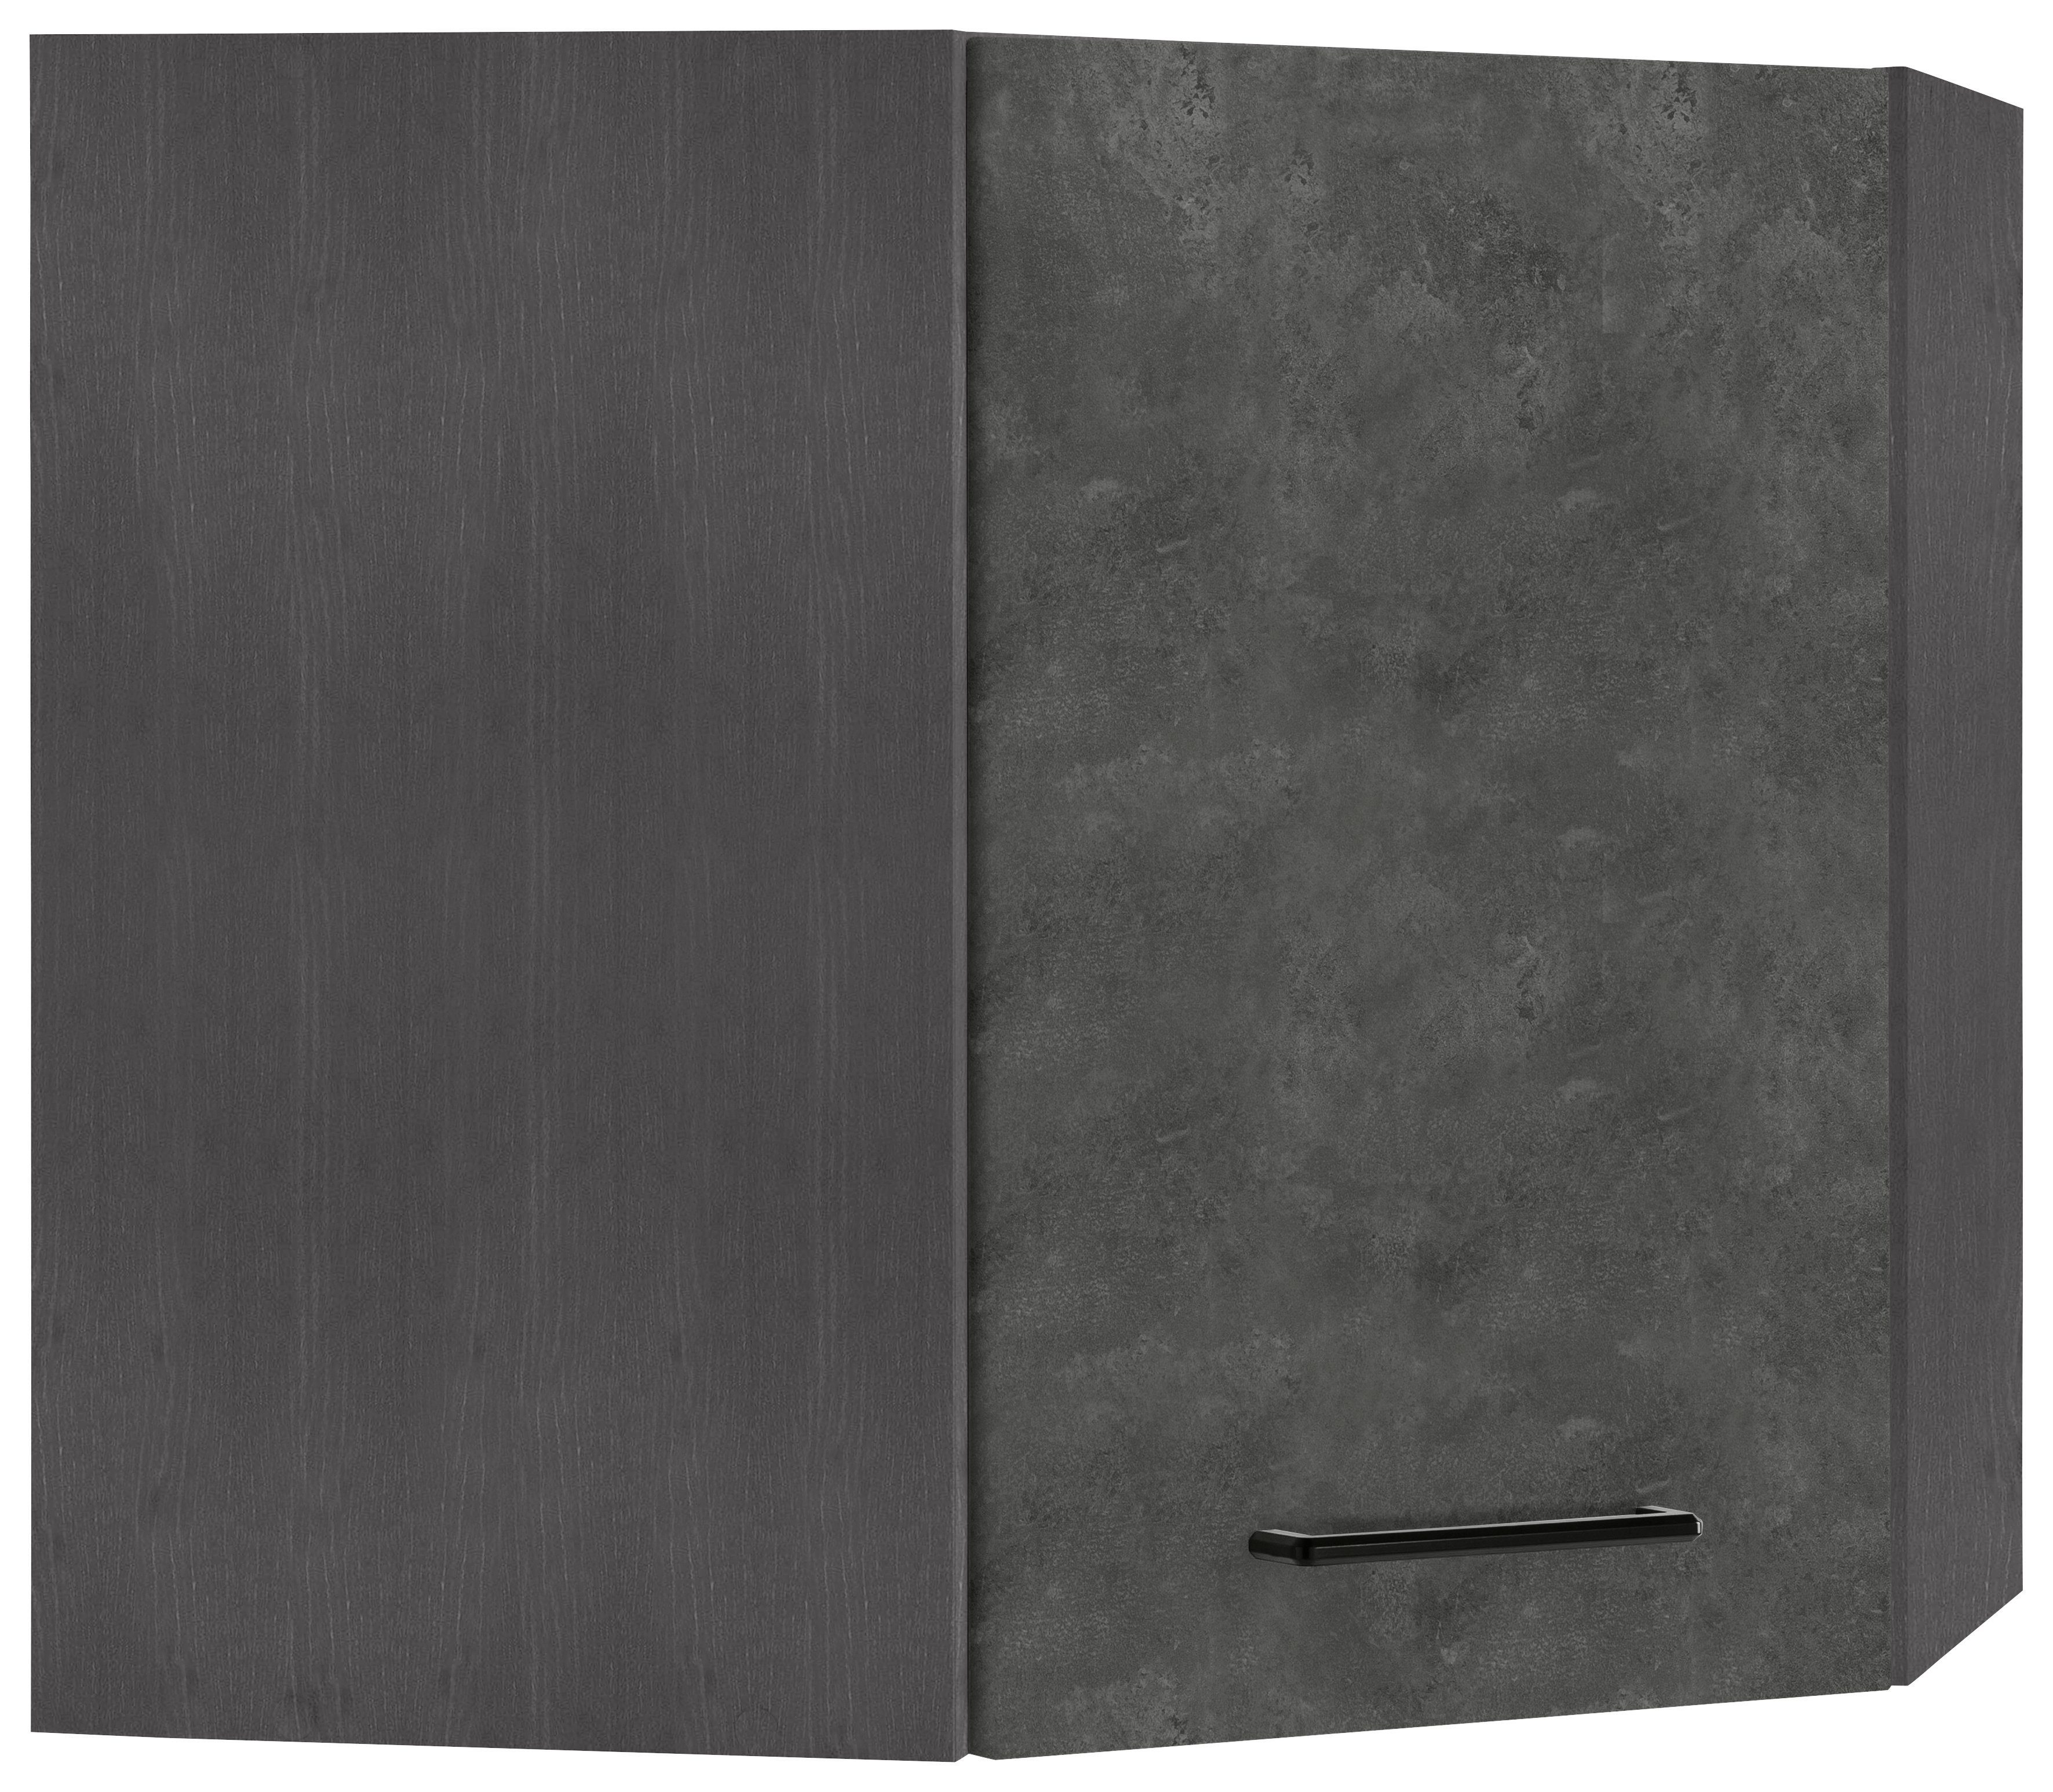 HELD MÖBEL Eckhängeschrank Tulsa 60 cm breit, 1 Tür, schwarzer Metallgriff, hochwertige MDF Front betonfarben dunkel | grafit | Hängeschränke